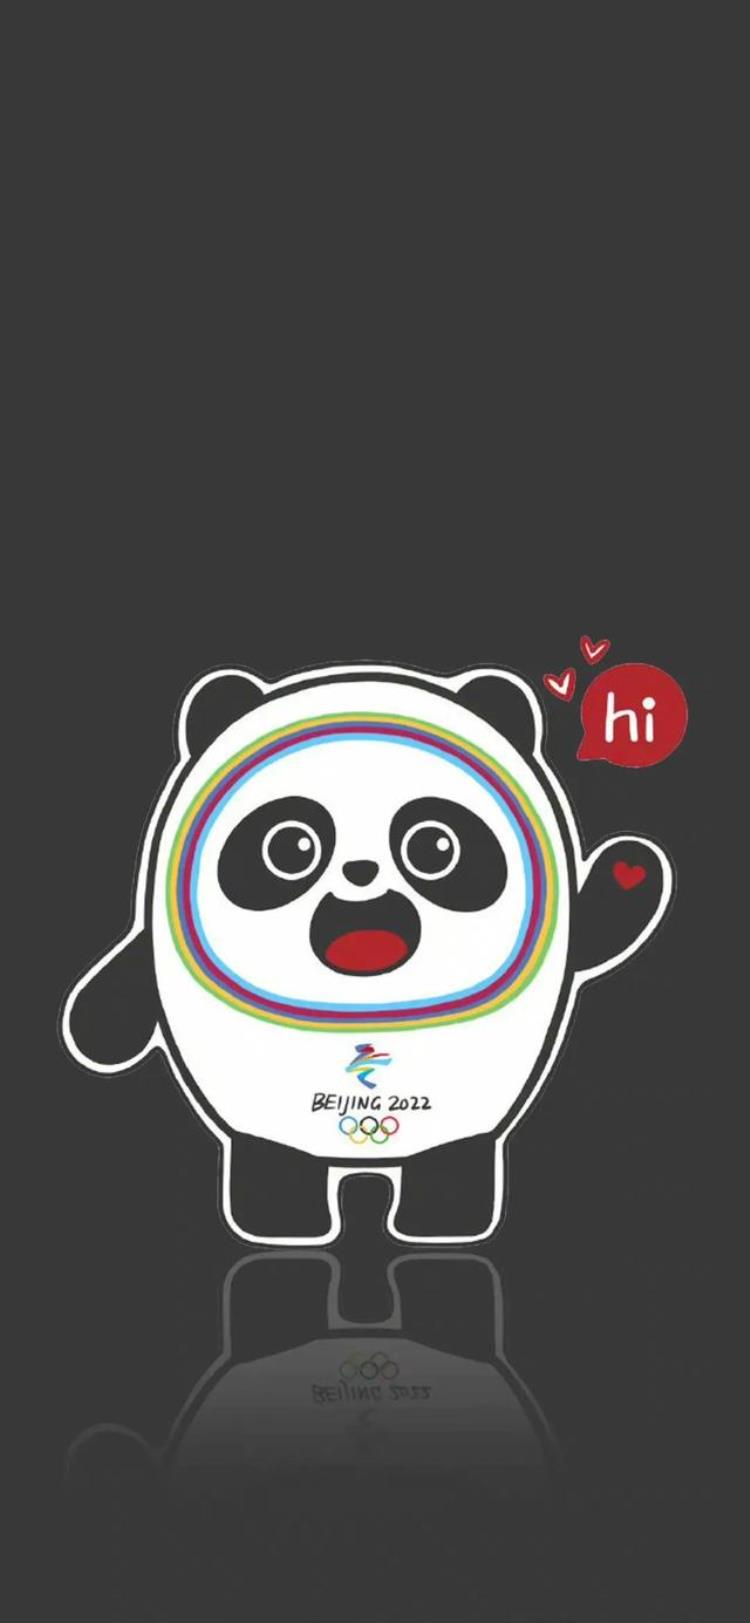 2022冬奥会手机壁纸「2022北京冬奥会冰墩墩可爱壁纸」